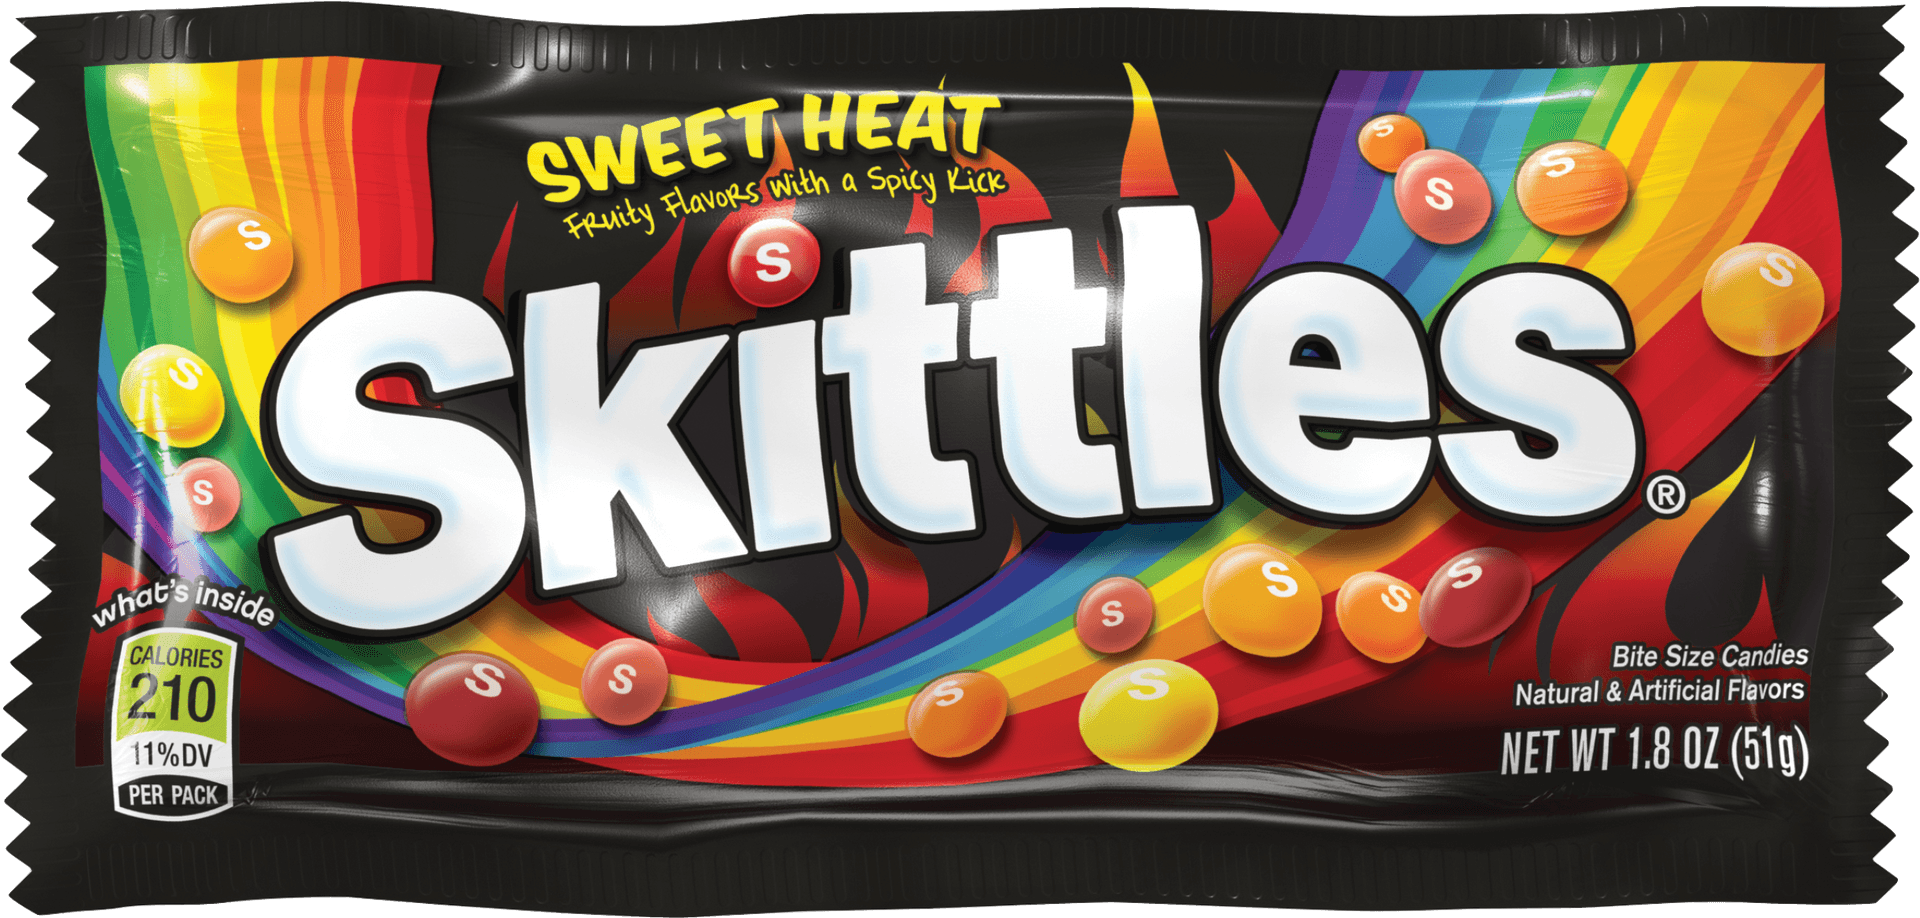 Skittles Sweet Heat Package PNG image